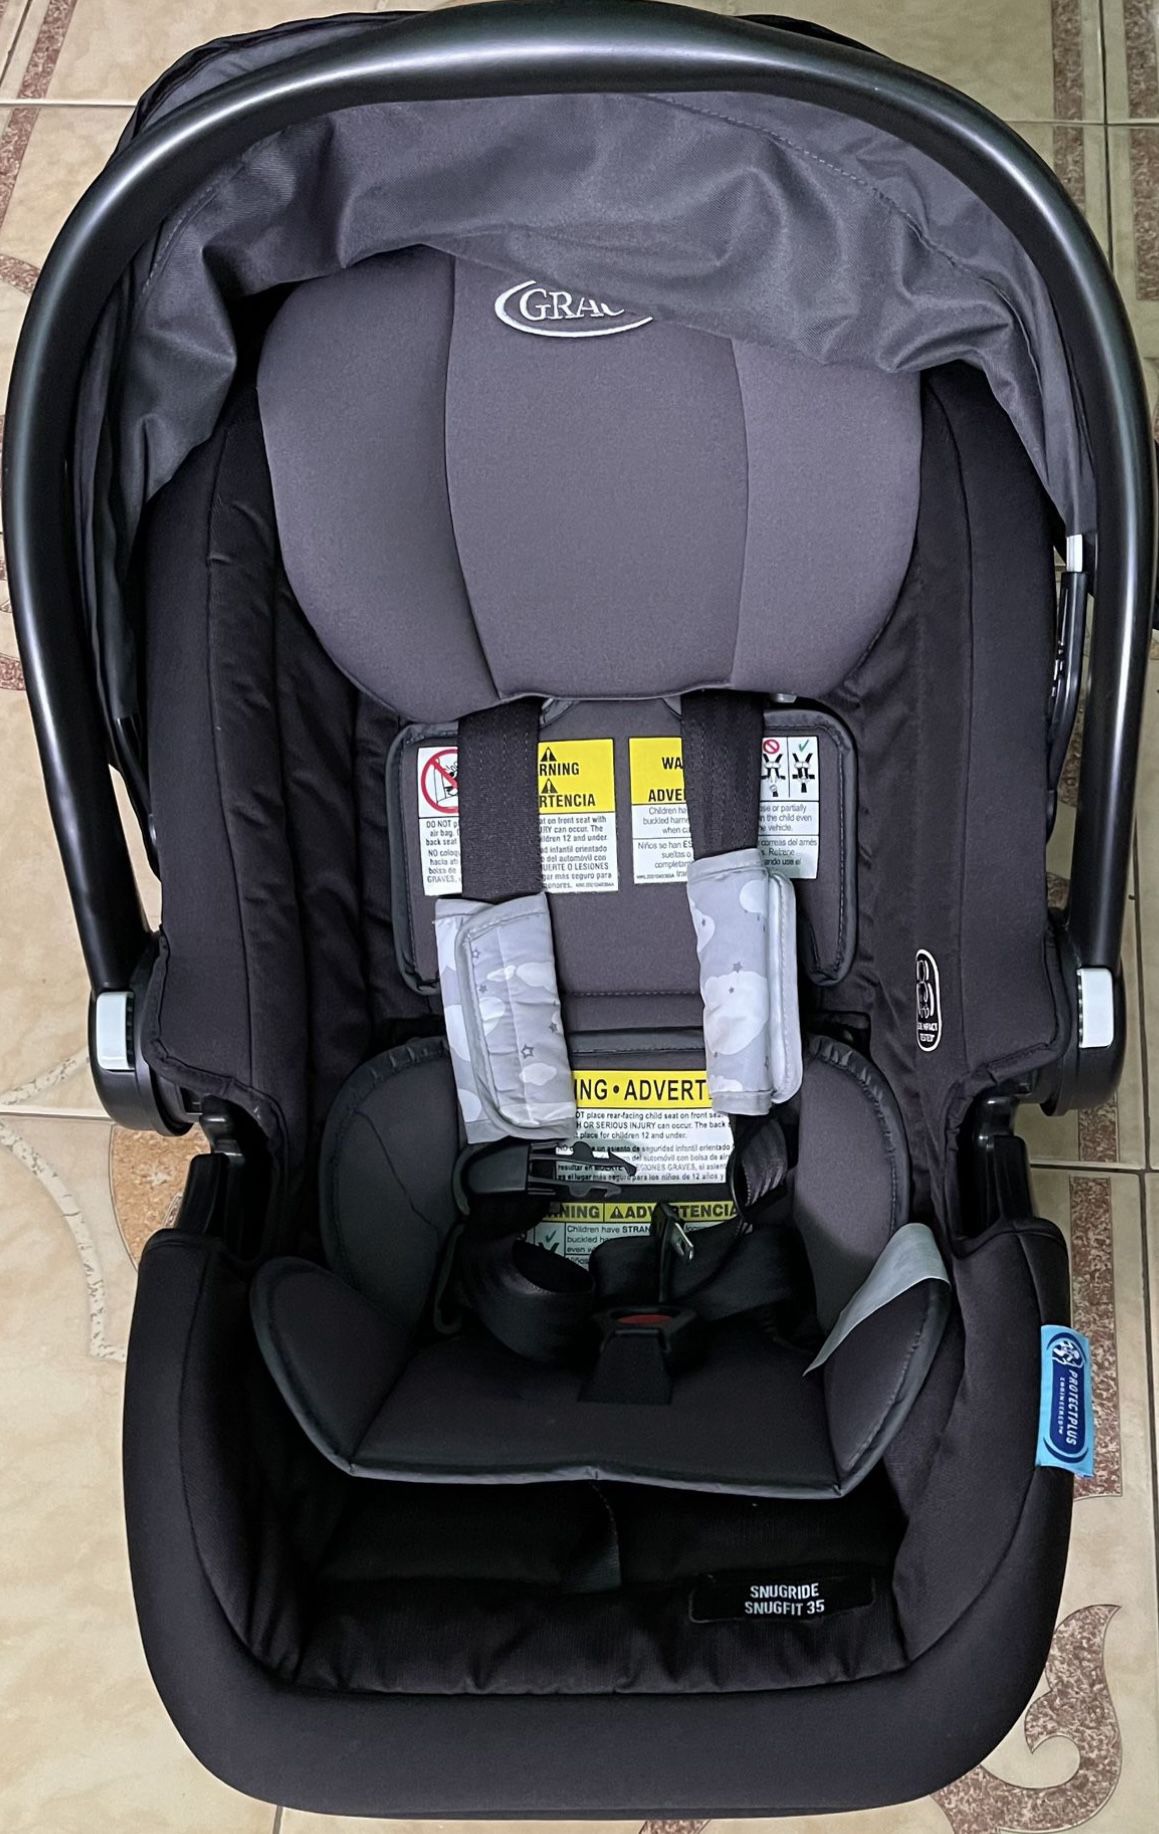 Free Baby Car Seat